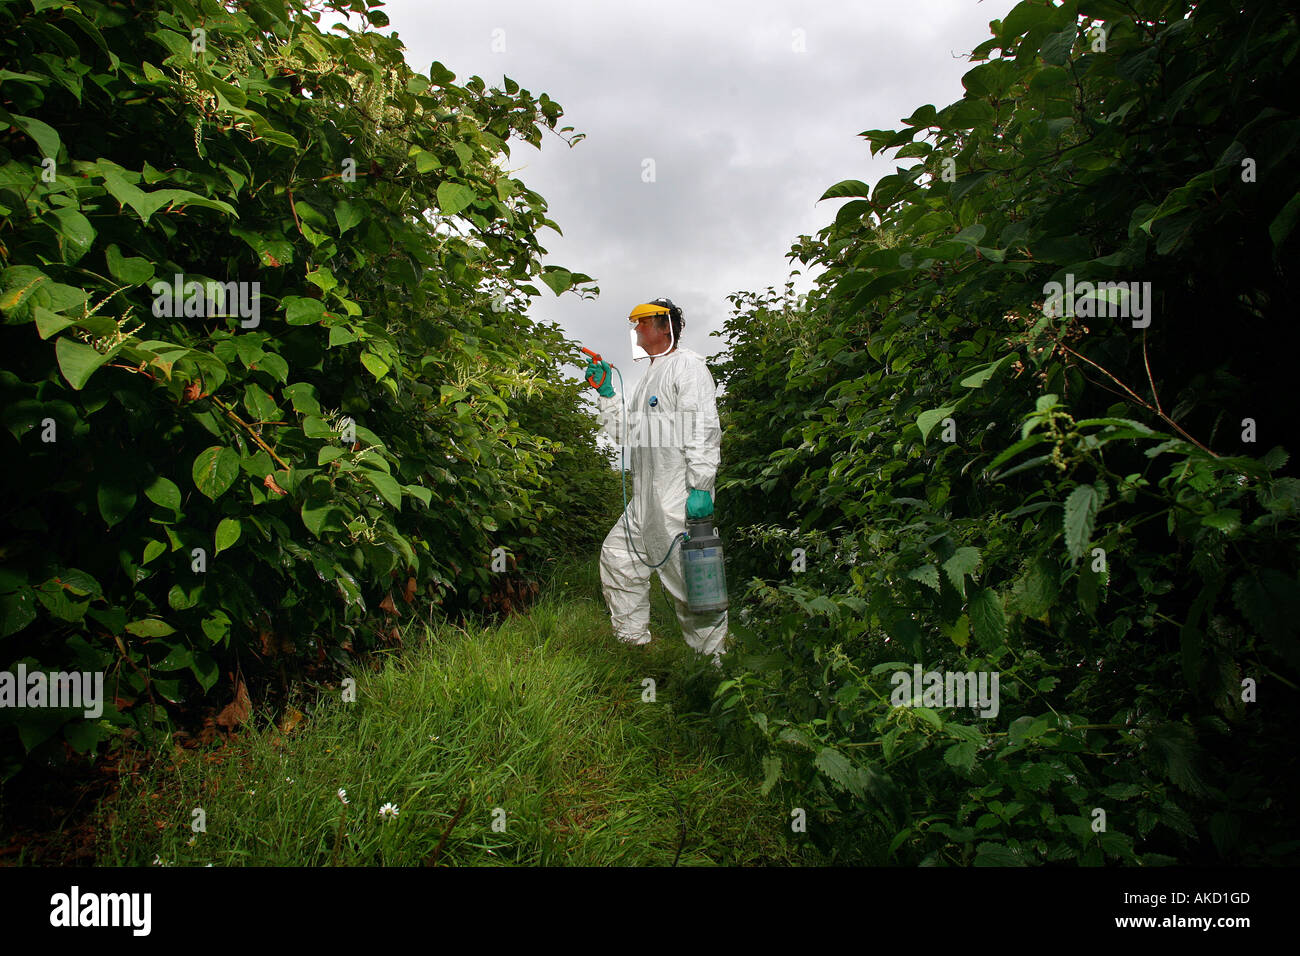 Ein Schädling Beseitigung Experten Gifte Japanischen Knöterich in Cornwall England UK Stockfoto